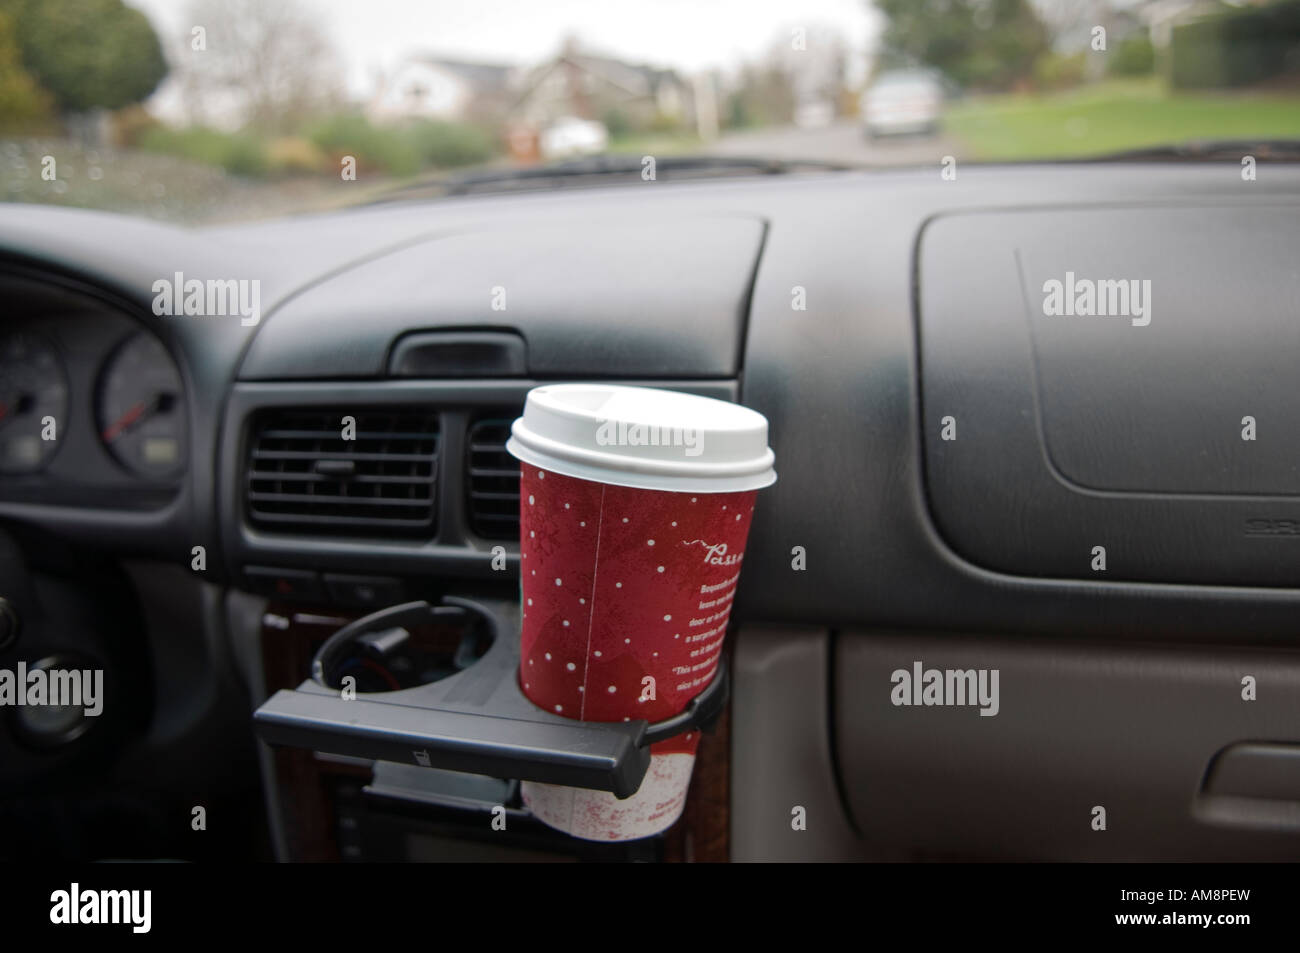 Kaffeetasse in einen Becherhalter im Auto Stockfotografie - Alamy